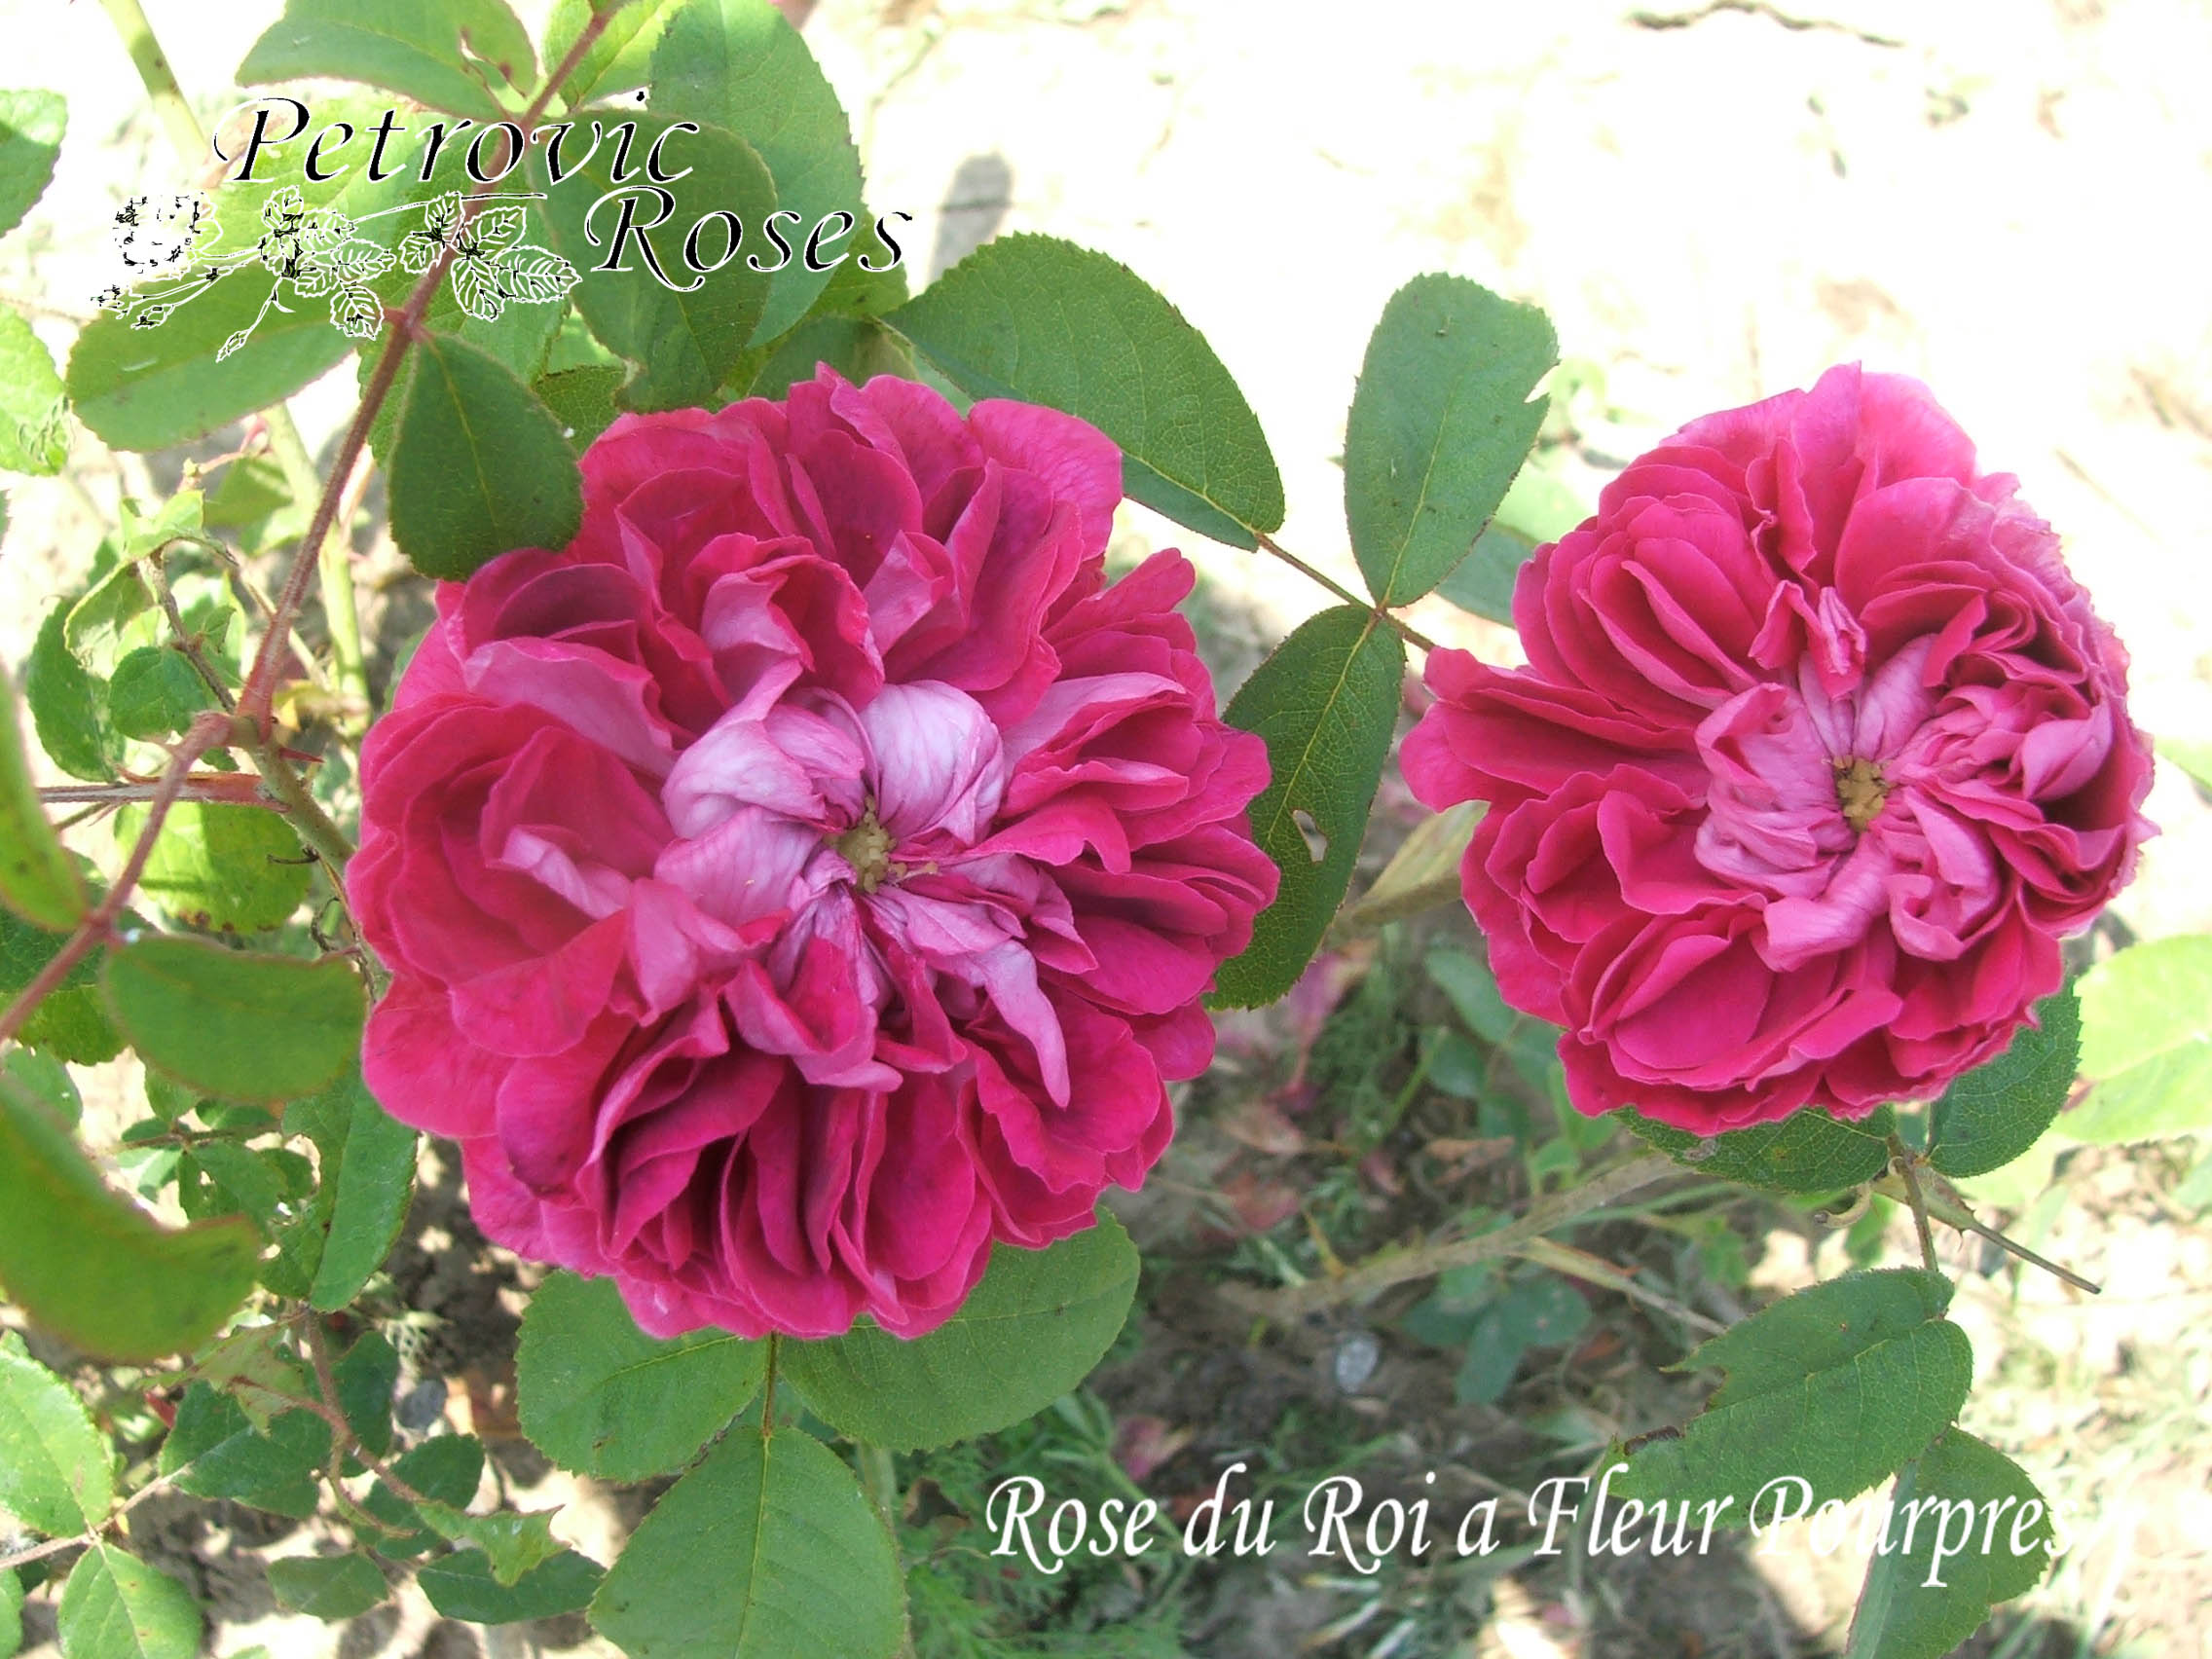 Rose Du Roi A Fleurs Pourpres Petrovic Roses